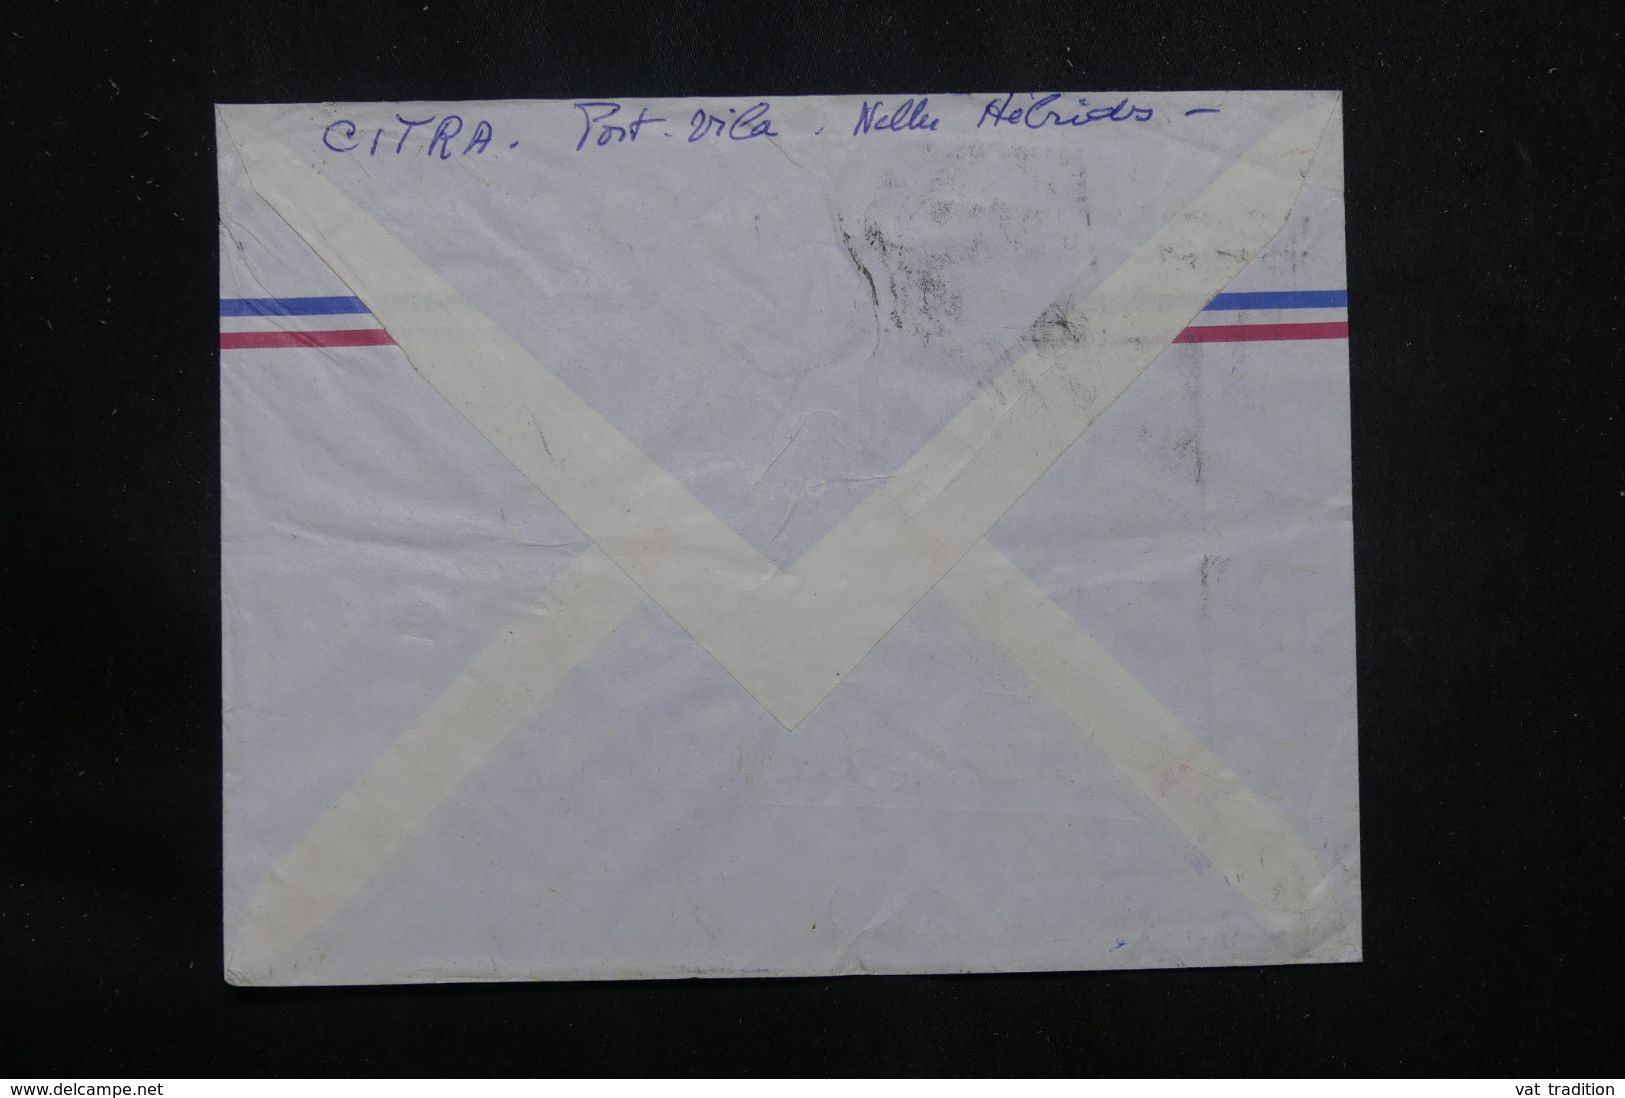 NOUVELLE HÉBRIDES - Enveloppe De Port Vila Pour Nouméa - L 65862 - Covers & Documents